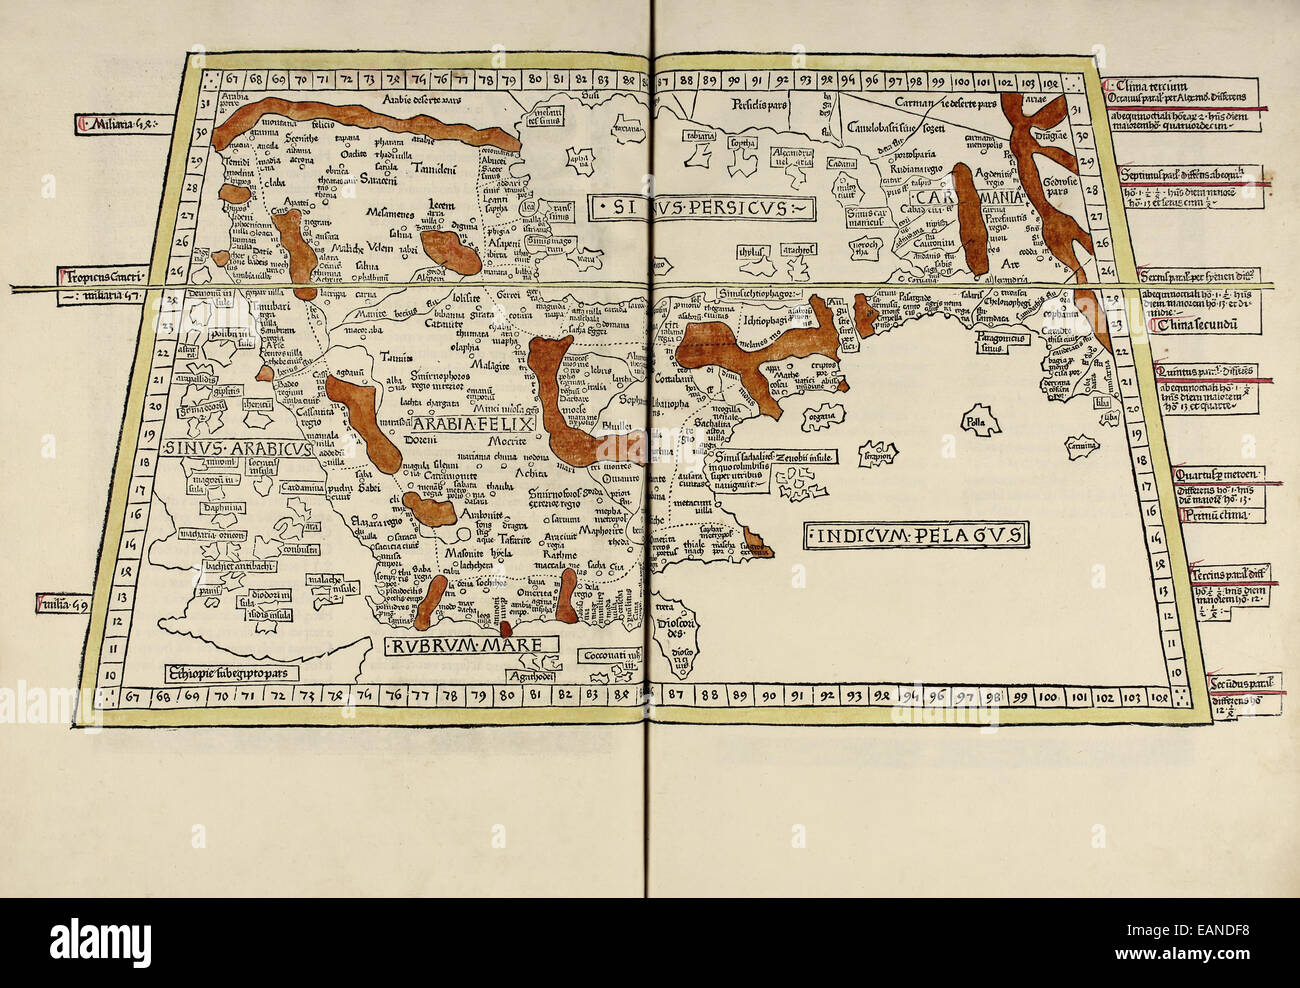 Karte der arabischen Halbinsel aus "Cosmographia" von Claudius Ptolemäus (Ptolemaeus) (90-168AD). Siehe Beschreibung für mehr Informationen. Stockfoto